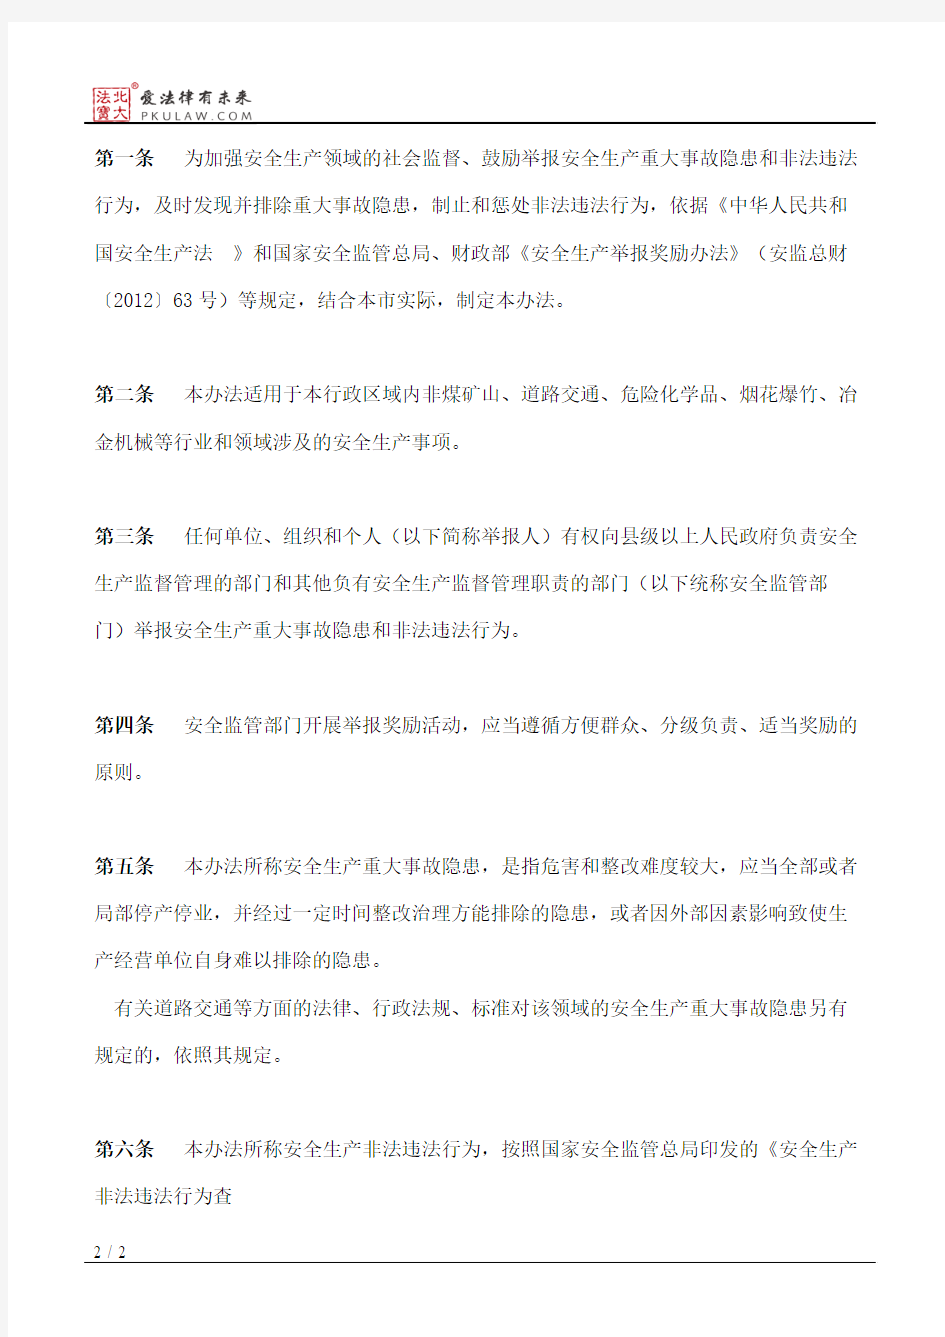 滁州市人民政府办公室关于印发滁州市安全生产举报奖励办法的通知